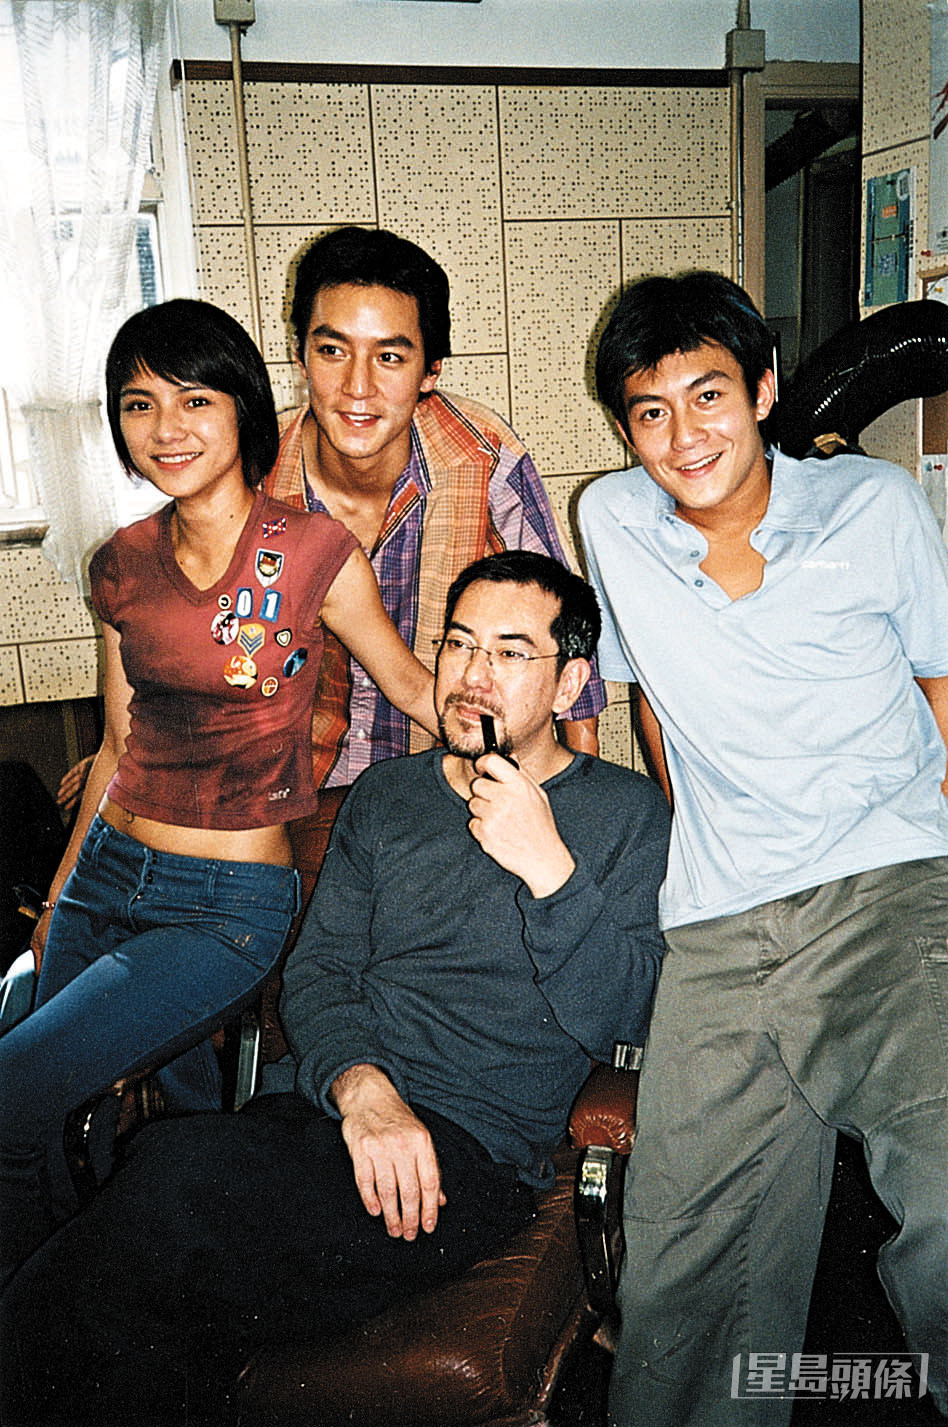 吳彥祖與陳冠希2002年合作張艾嘉電影《想飛》，當時正值兩大男神的全盛時期。